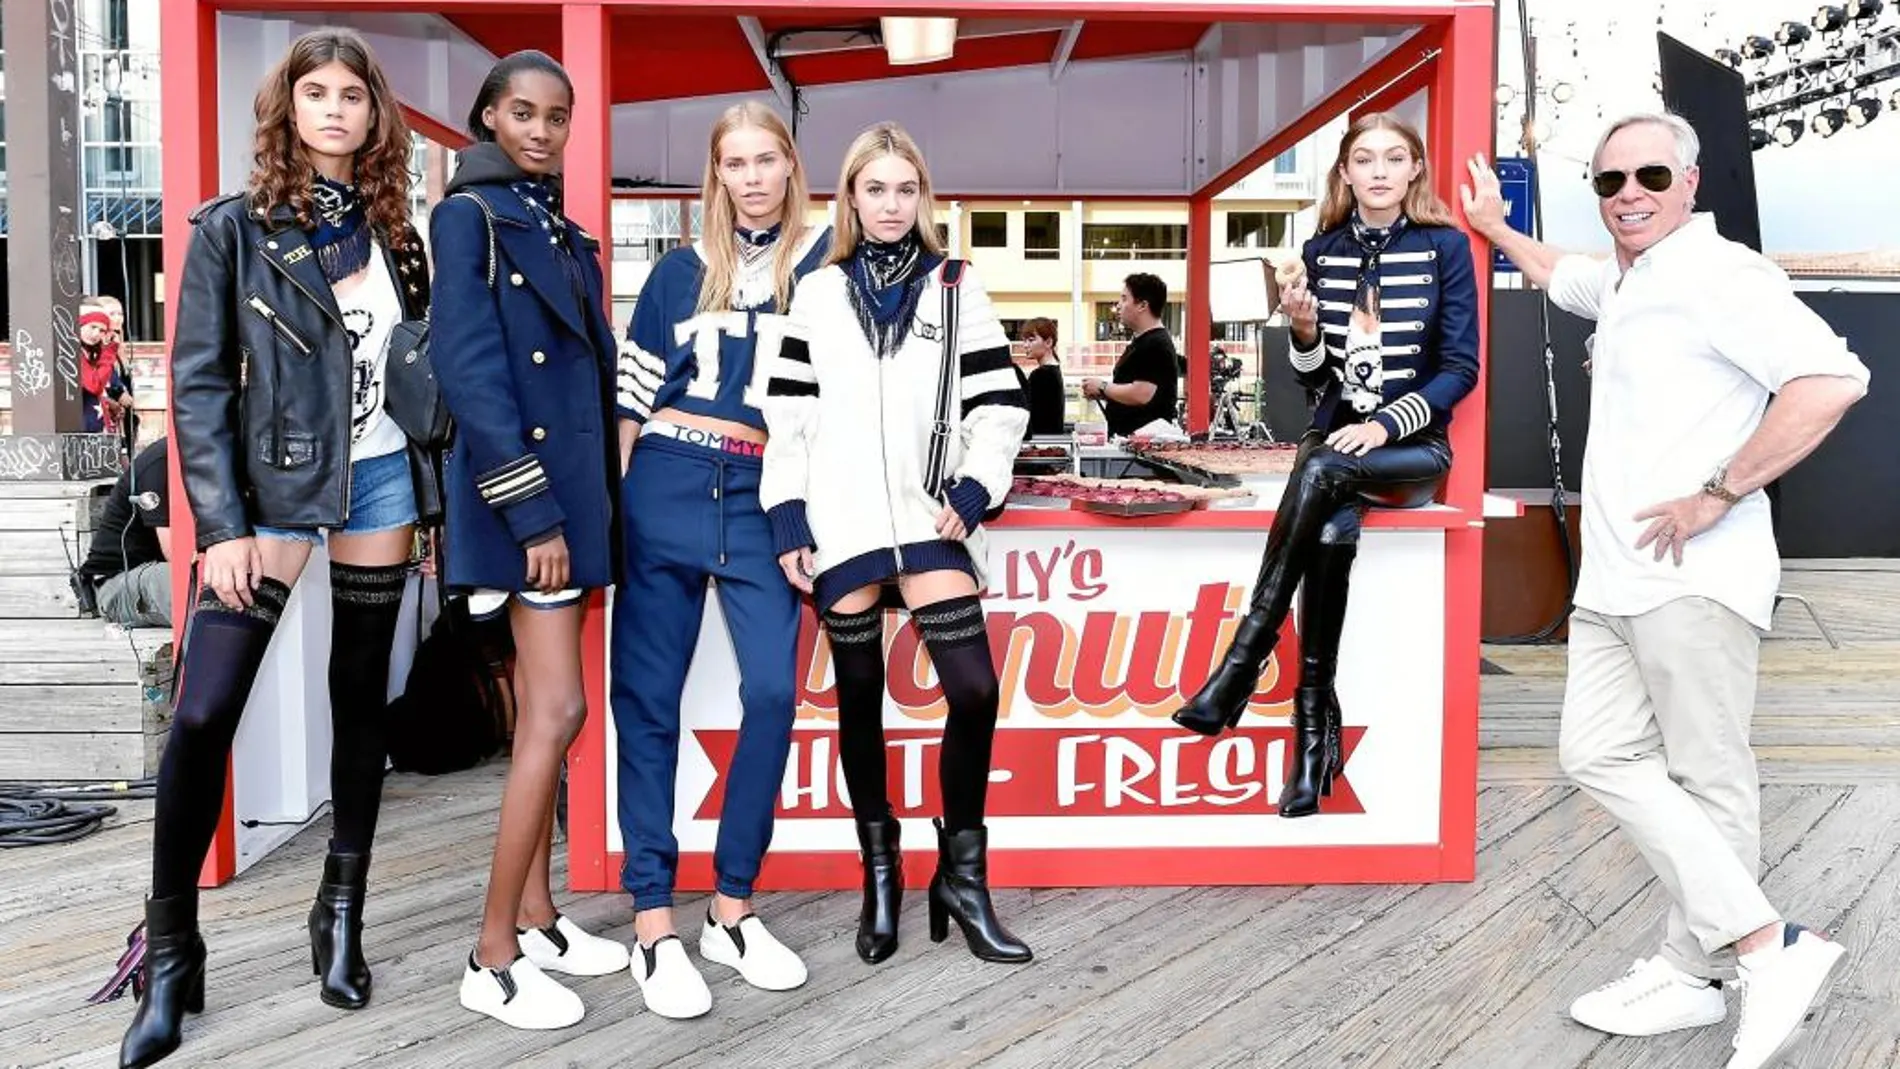 De derecha a izquierda, Tommy Hilfiger junto a Gigi Hadid y el resto de modelos vistiendo su nueva colección